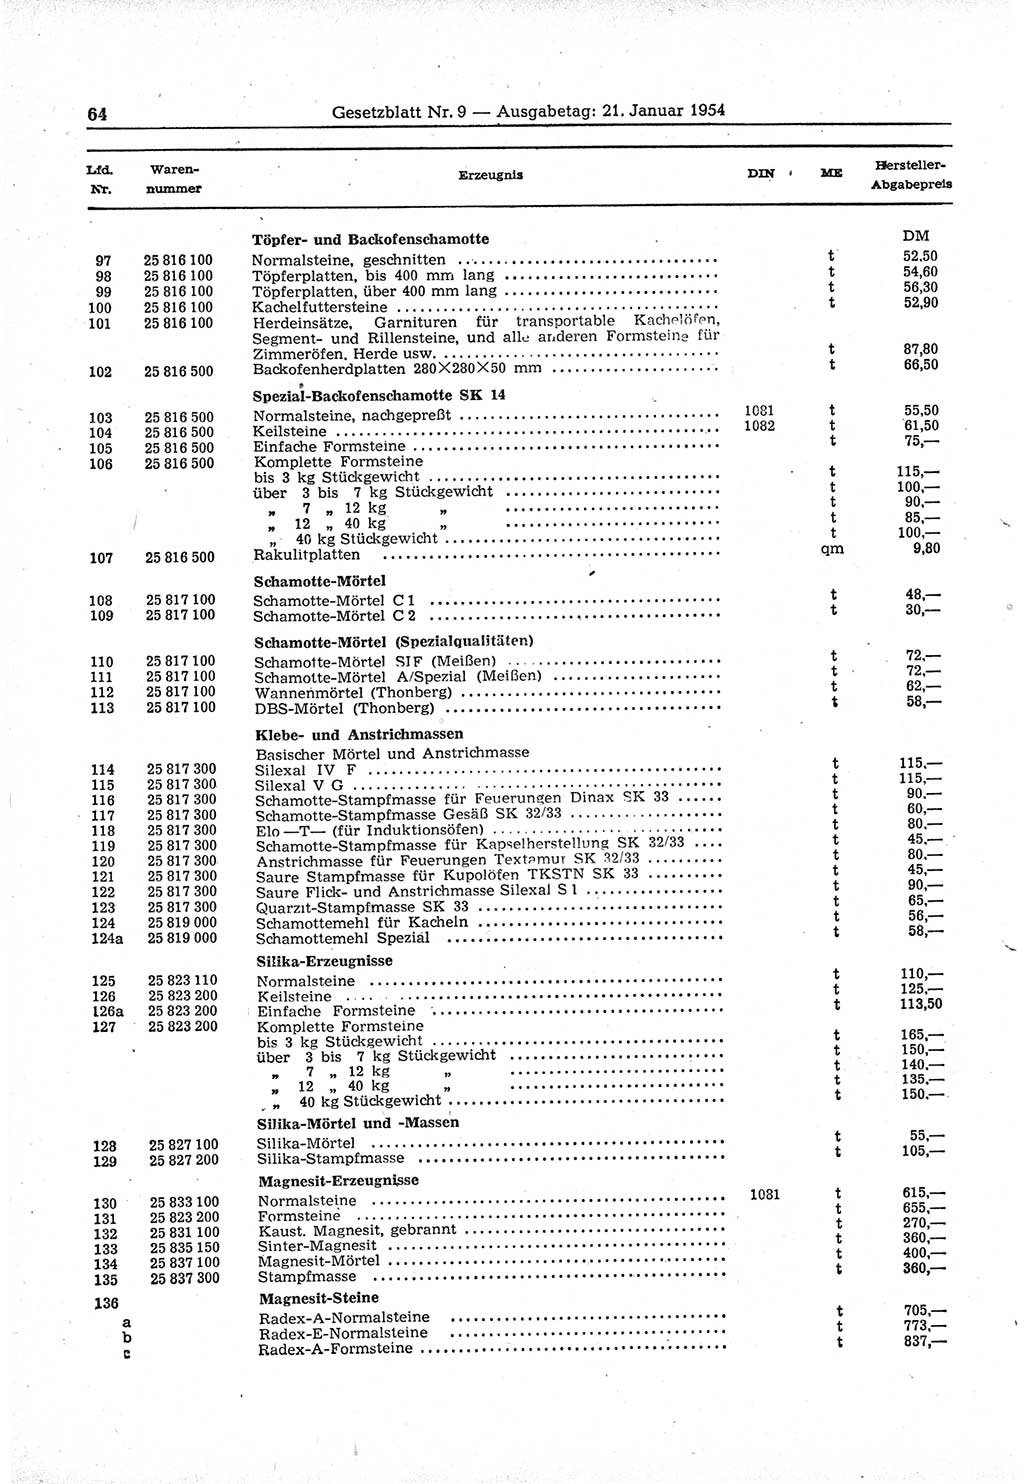 Gesetzblatt (GBl.) der Deutschen Demokratischen Republik (DDR) 1954, Seite 64 (GBl. DDR 1954, S. 64)